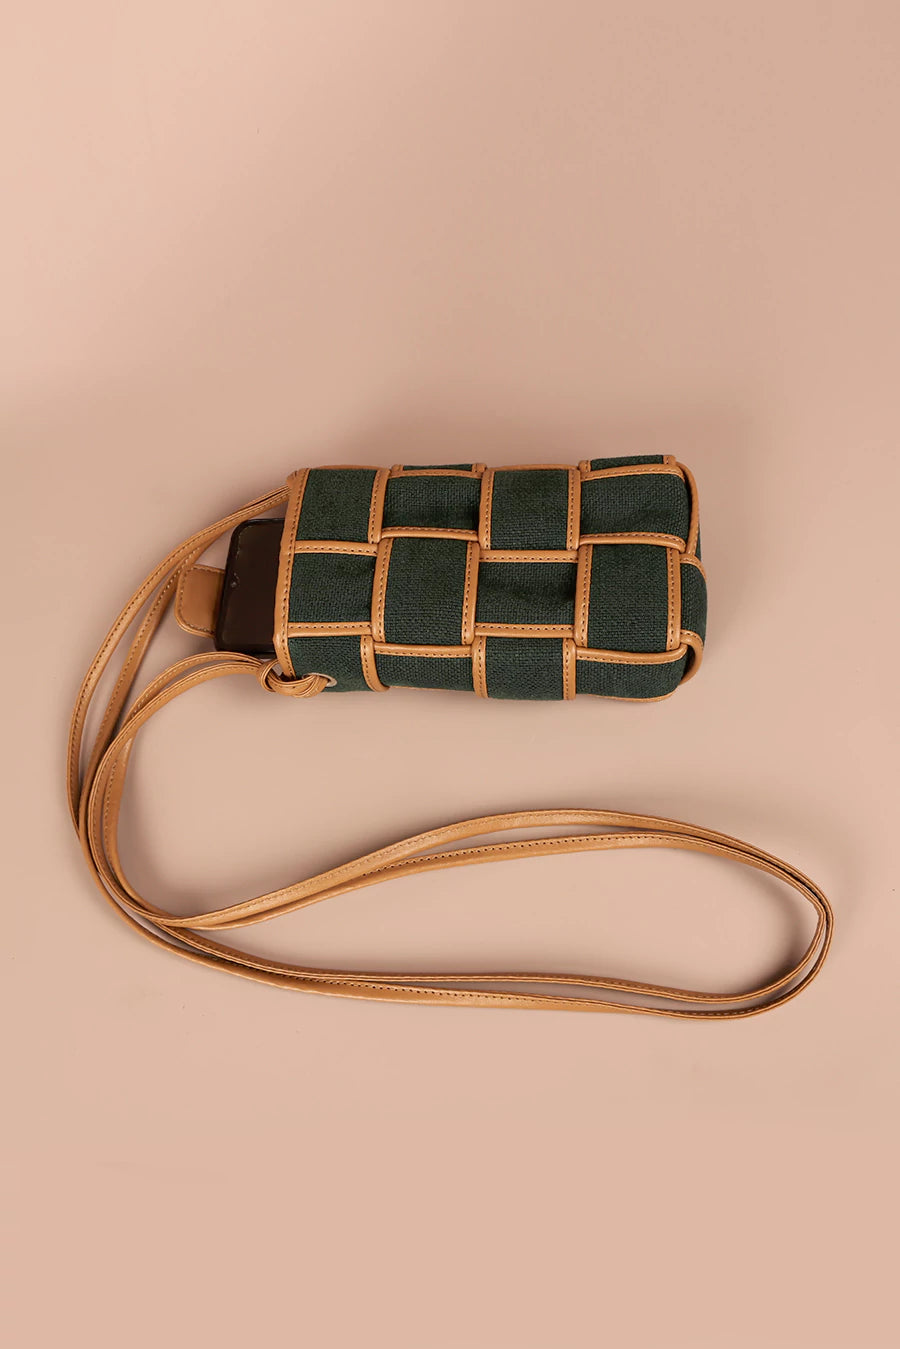 Soft jute Mobile sling Bag jade front